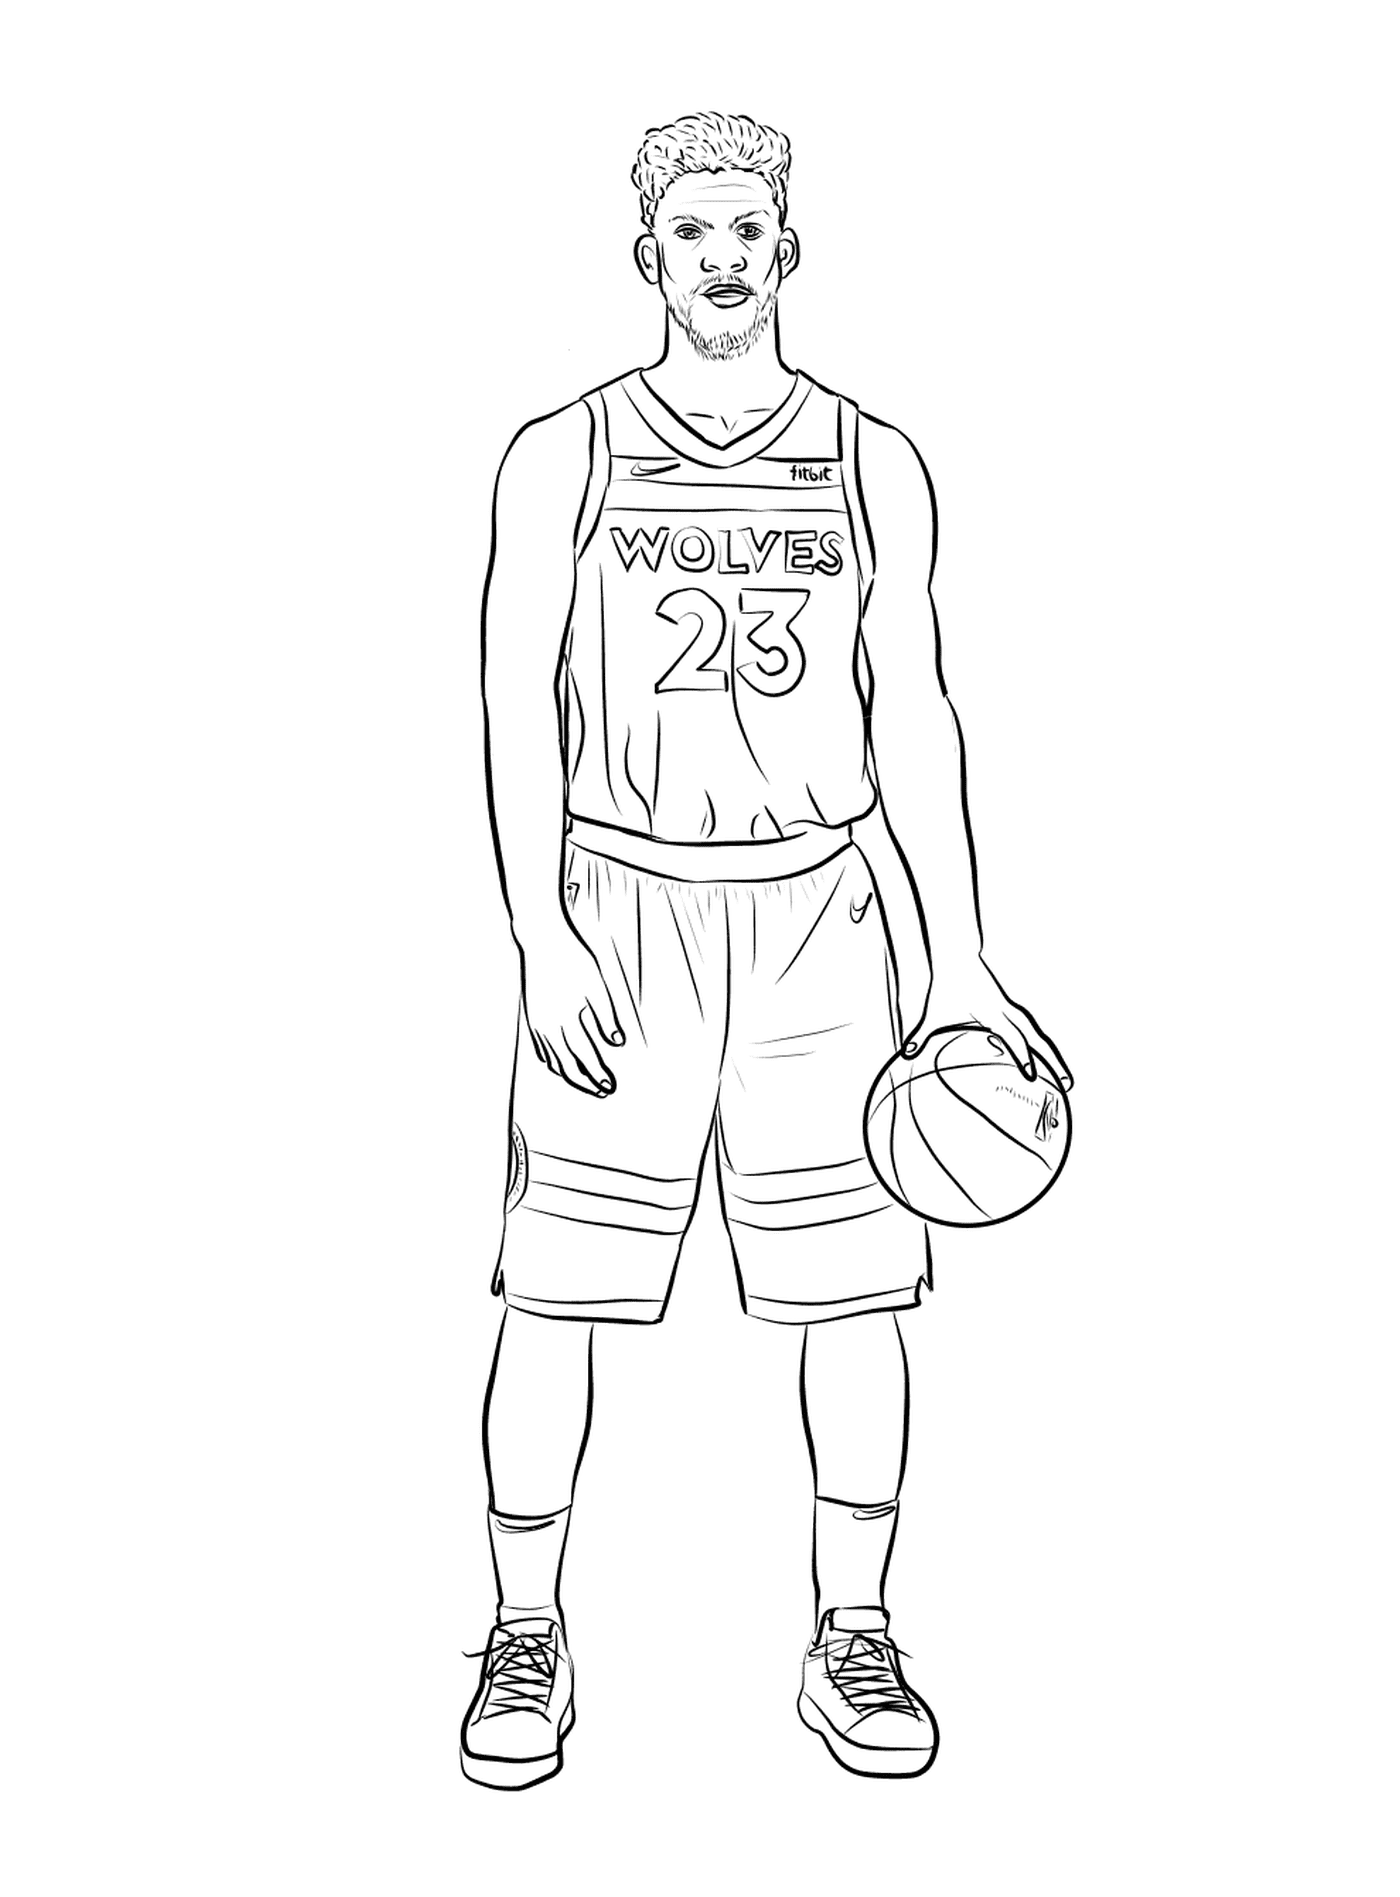  Джимми Батлер держит баскетбольный мяч 